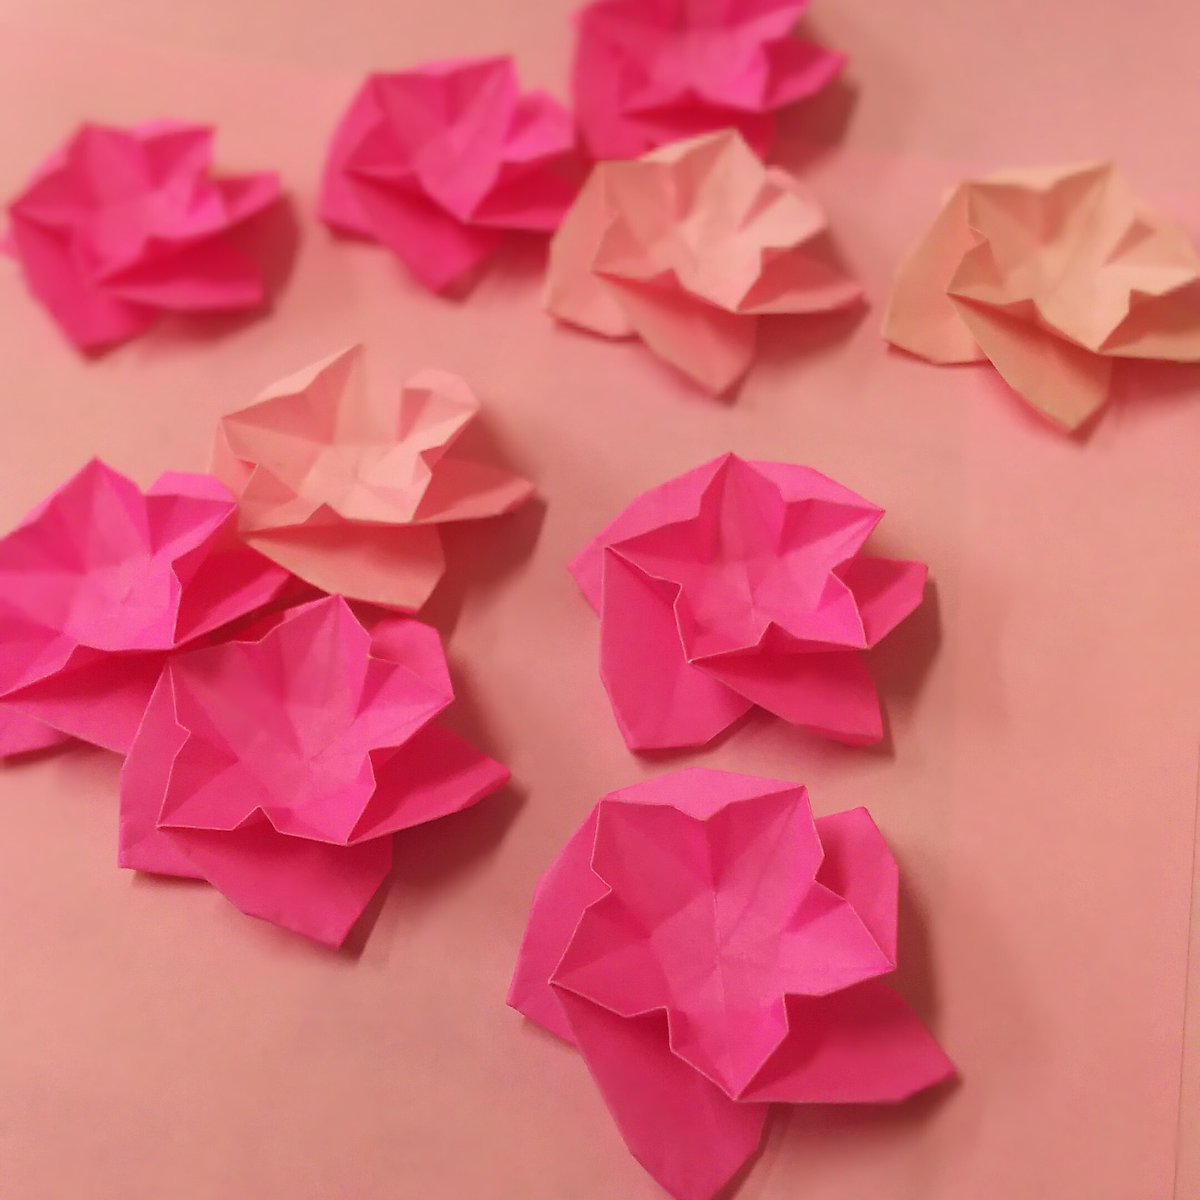 まりっぺ 久々の折り紙 やっぱり折り紙好き もうすぐひな祭り ひな祭りと言うと桃の花 ピンクの花って華やかで 可愛いよね ひな祭り 折り紙作品 桃の花